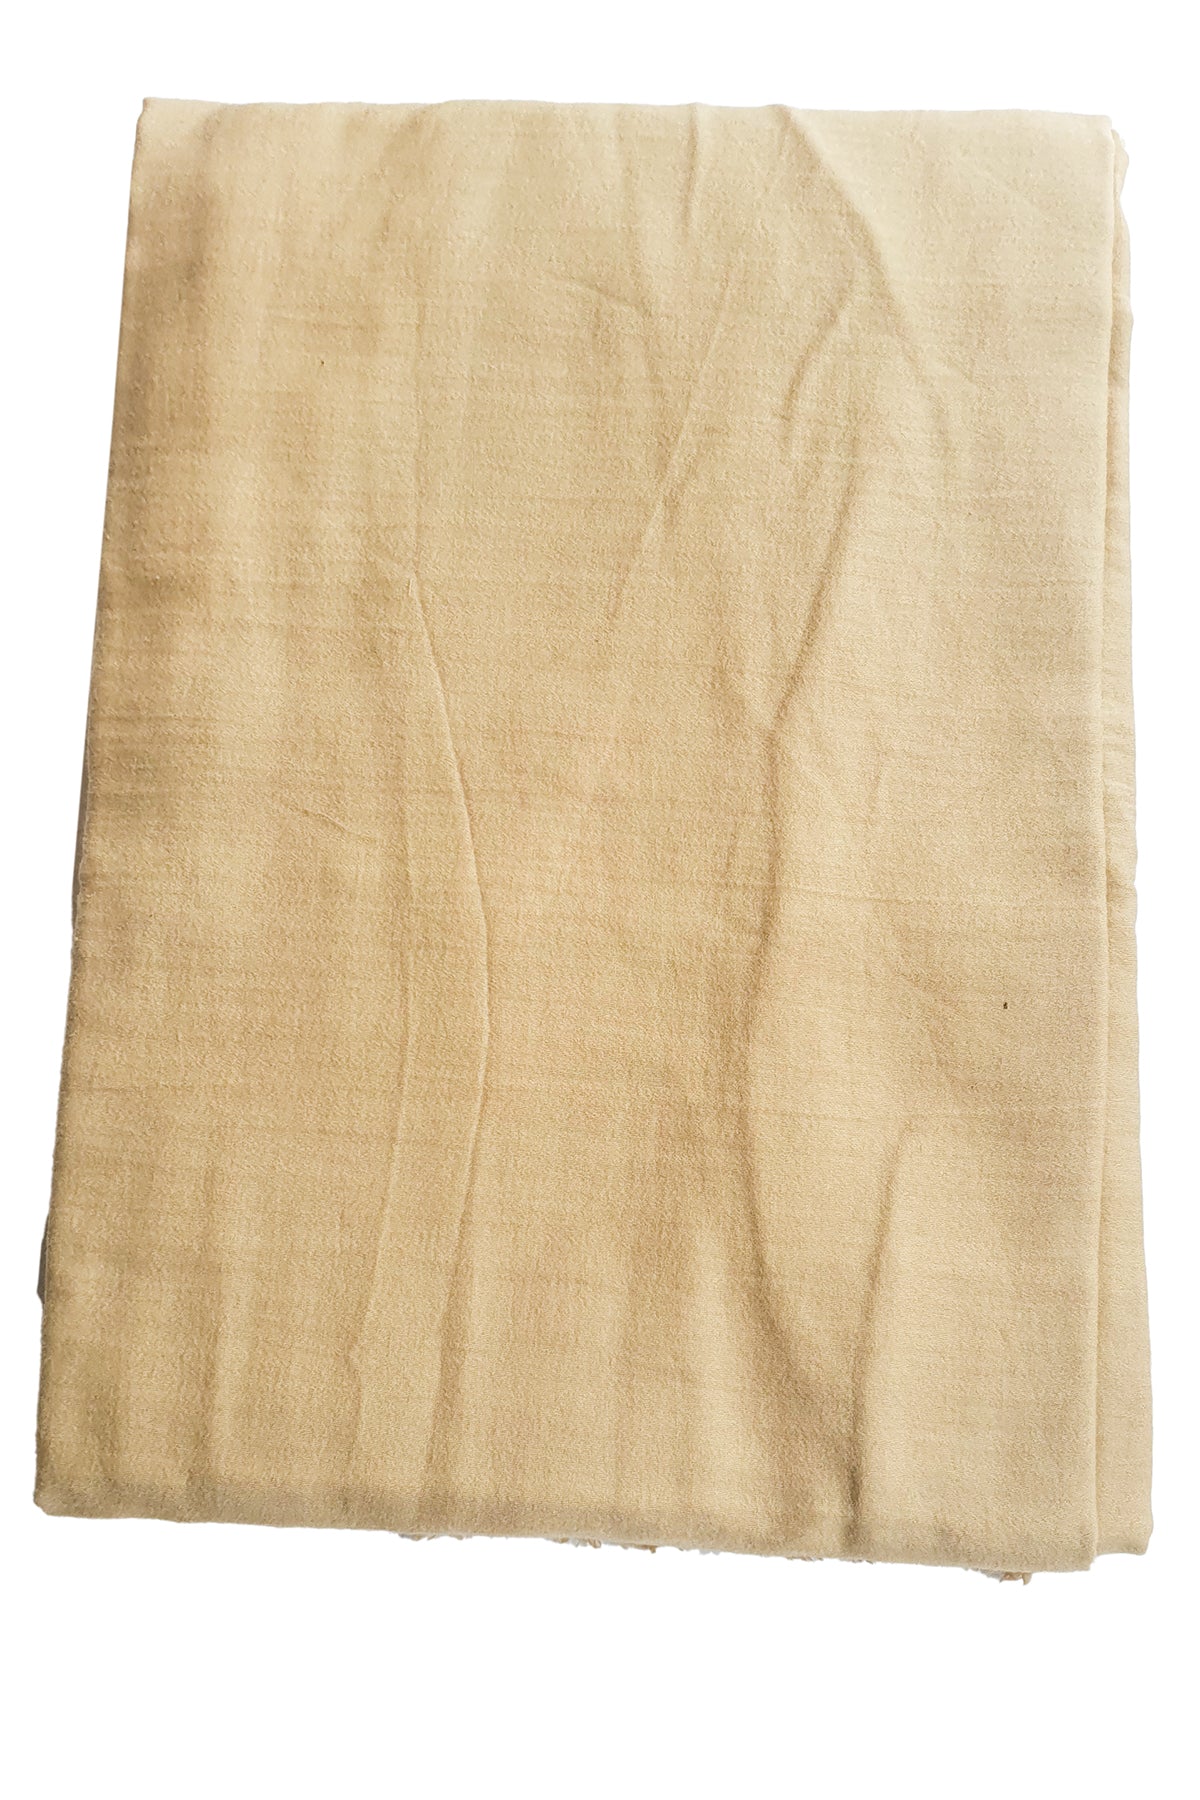 Tussar Linen Cotton Printed Unstitched Suit Set